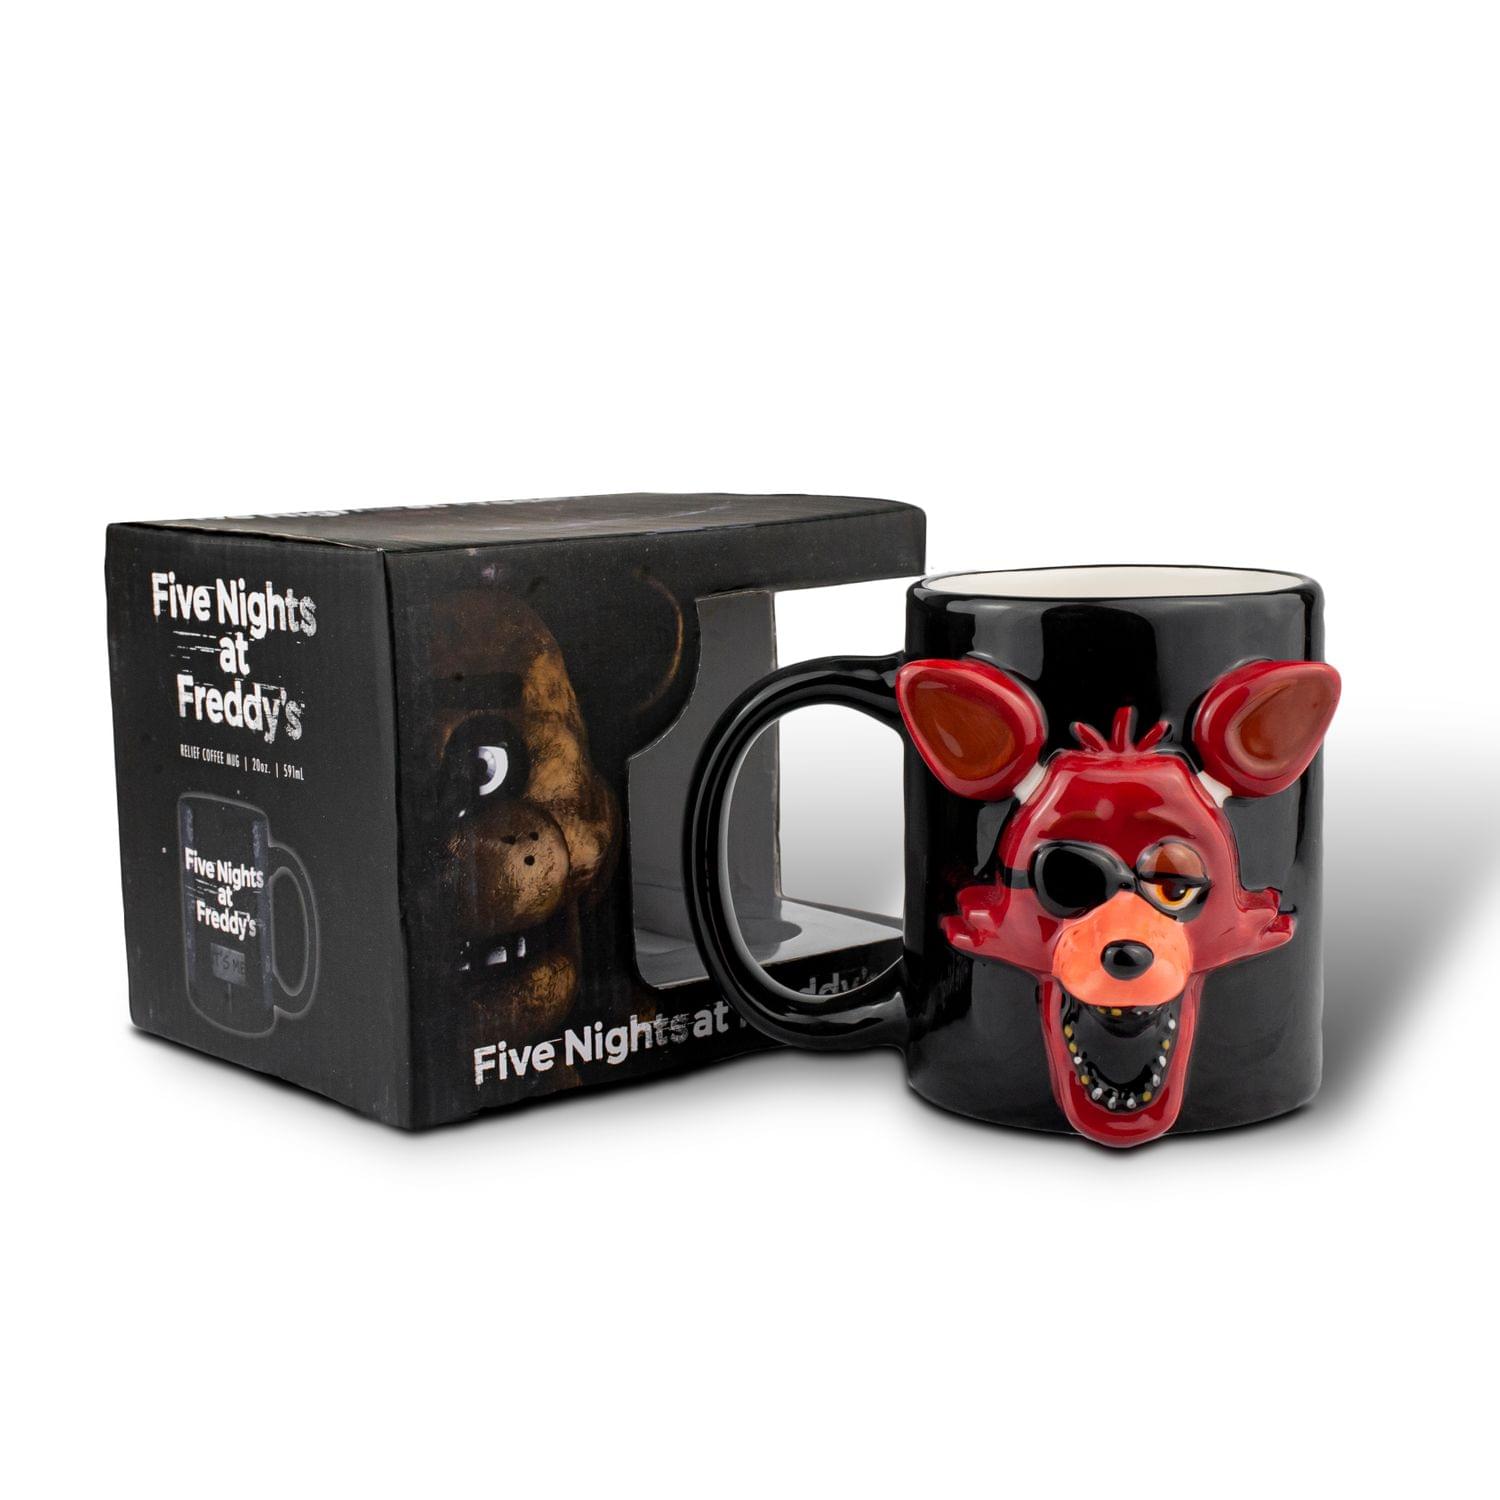 Five Nights At Freddy Foxy Relief Coffee Mug | Foxy 3D Ceramic Mug | 20 Ounces